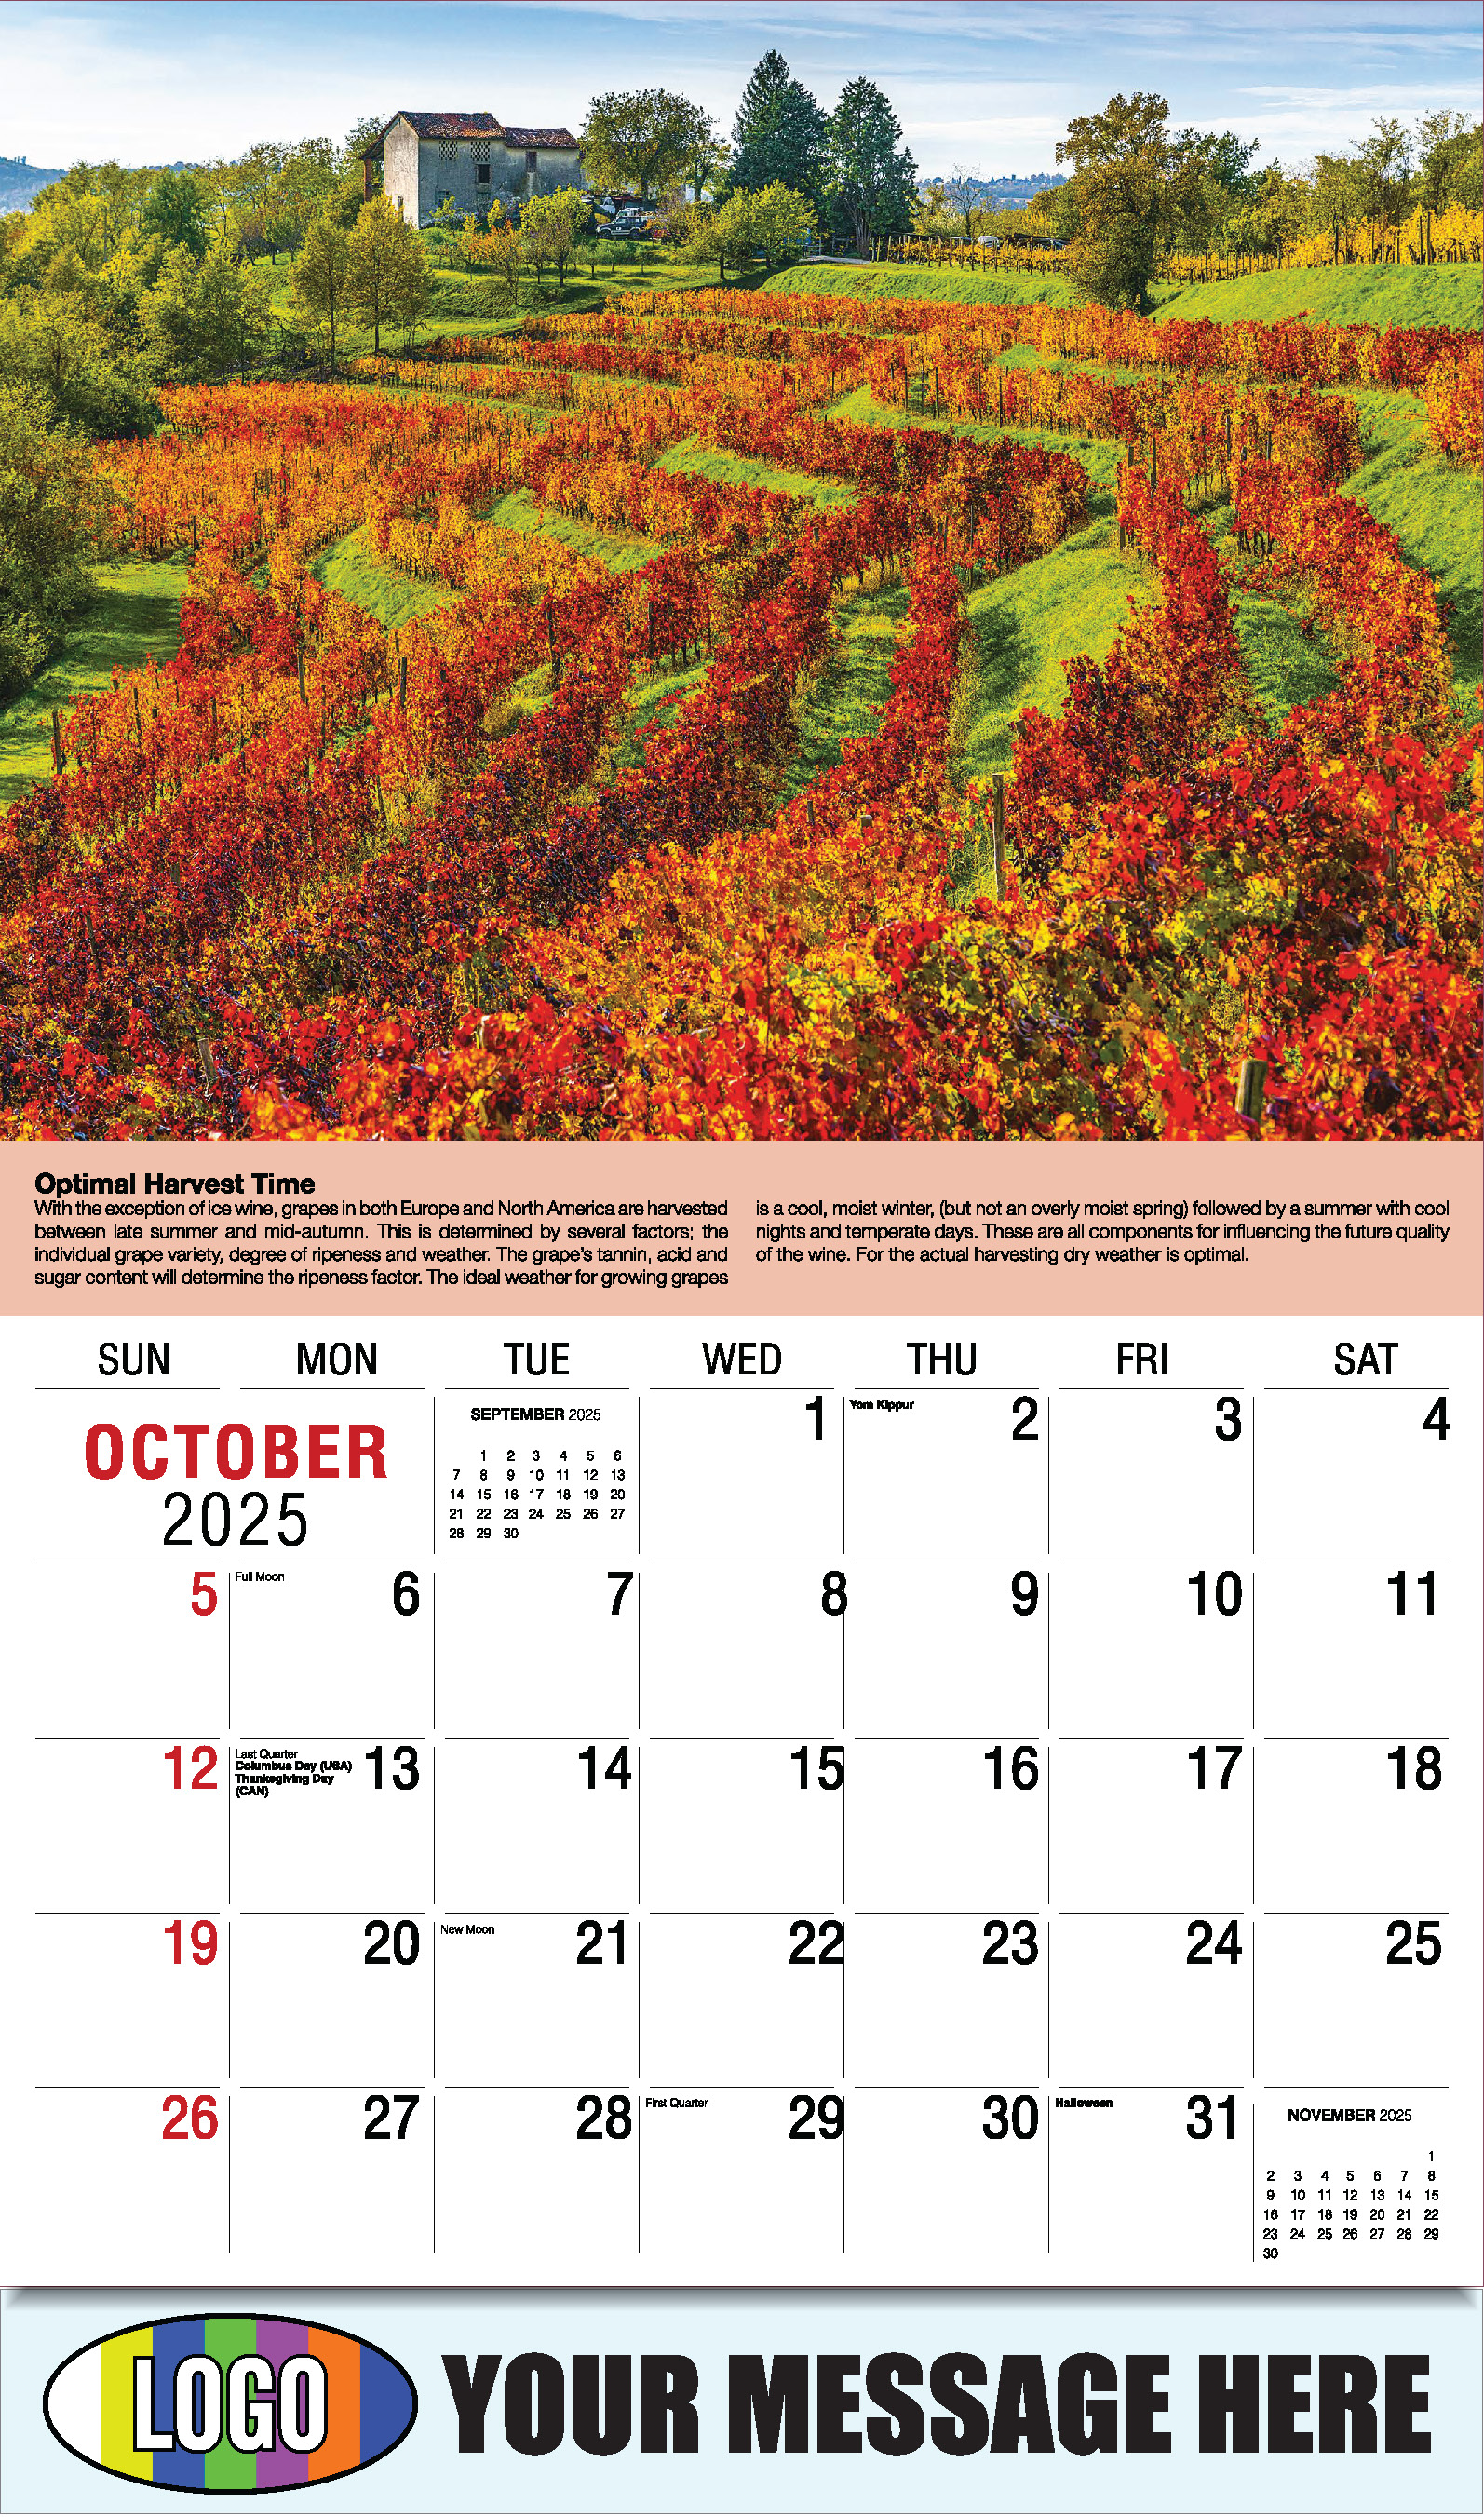 Vintages - Wine Tips 2025 Business Promo Calendar - October